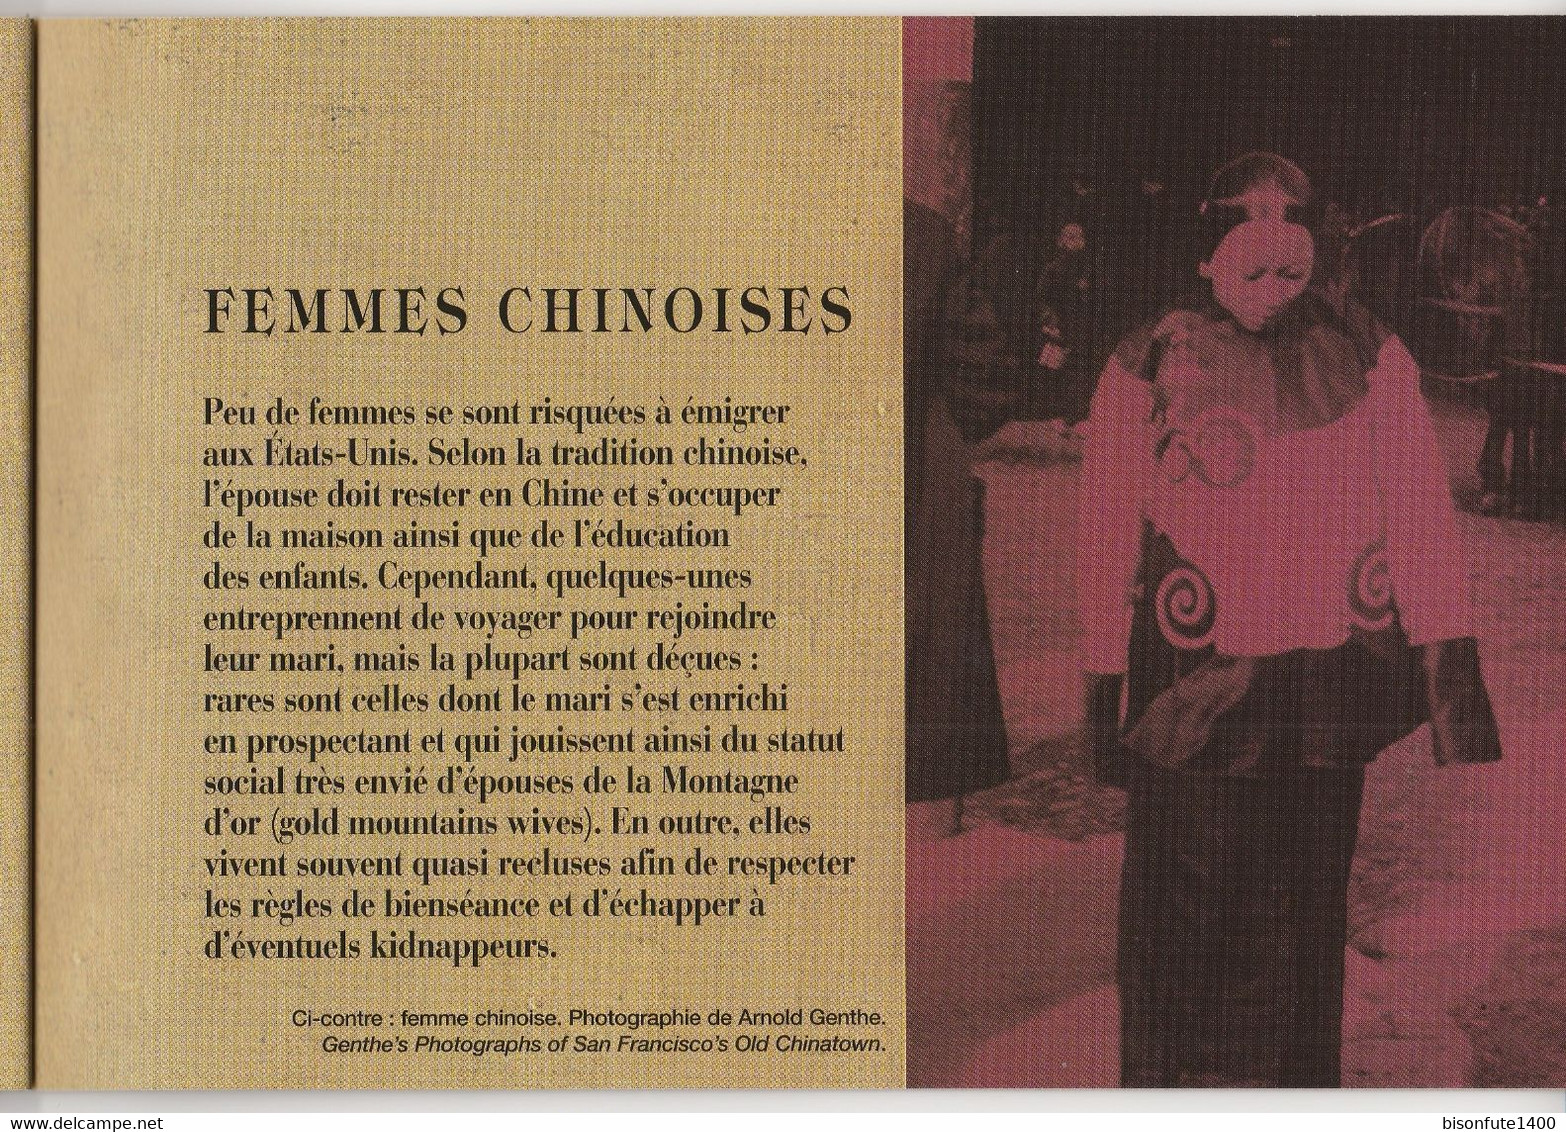 Carnet de croquis et historique sur Chinaman ( voir photos ).